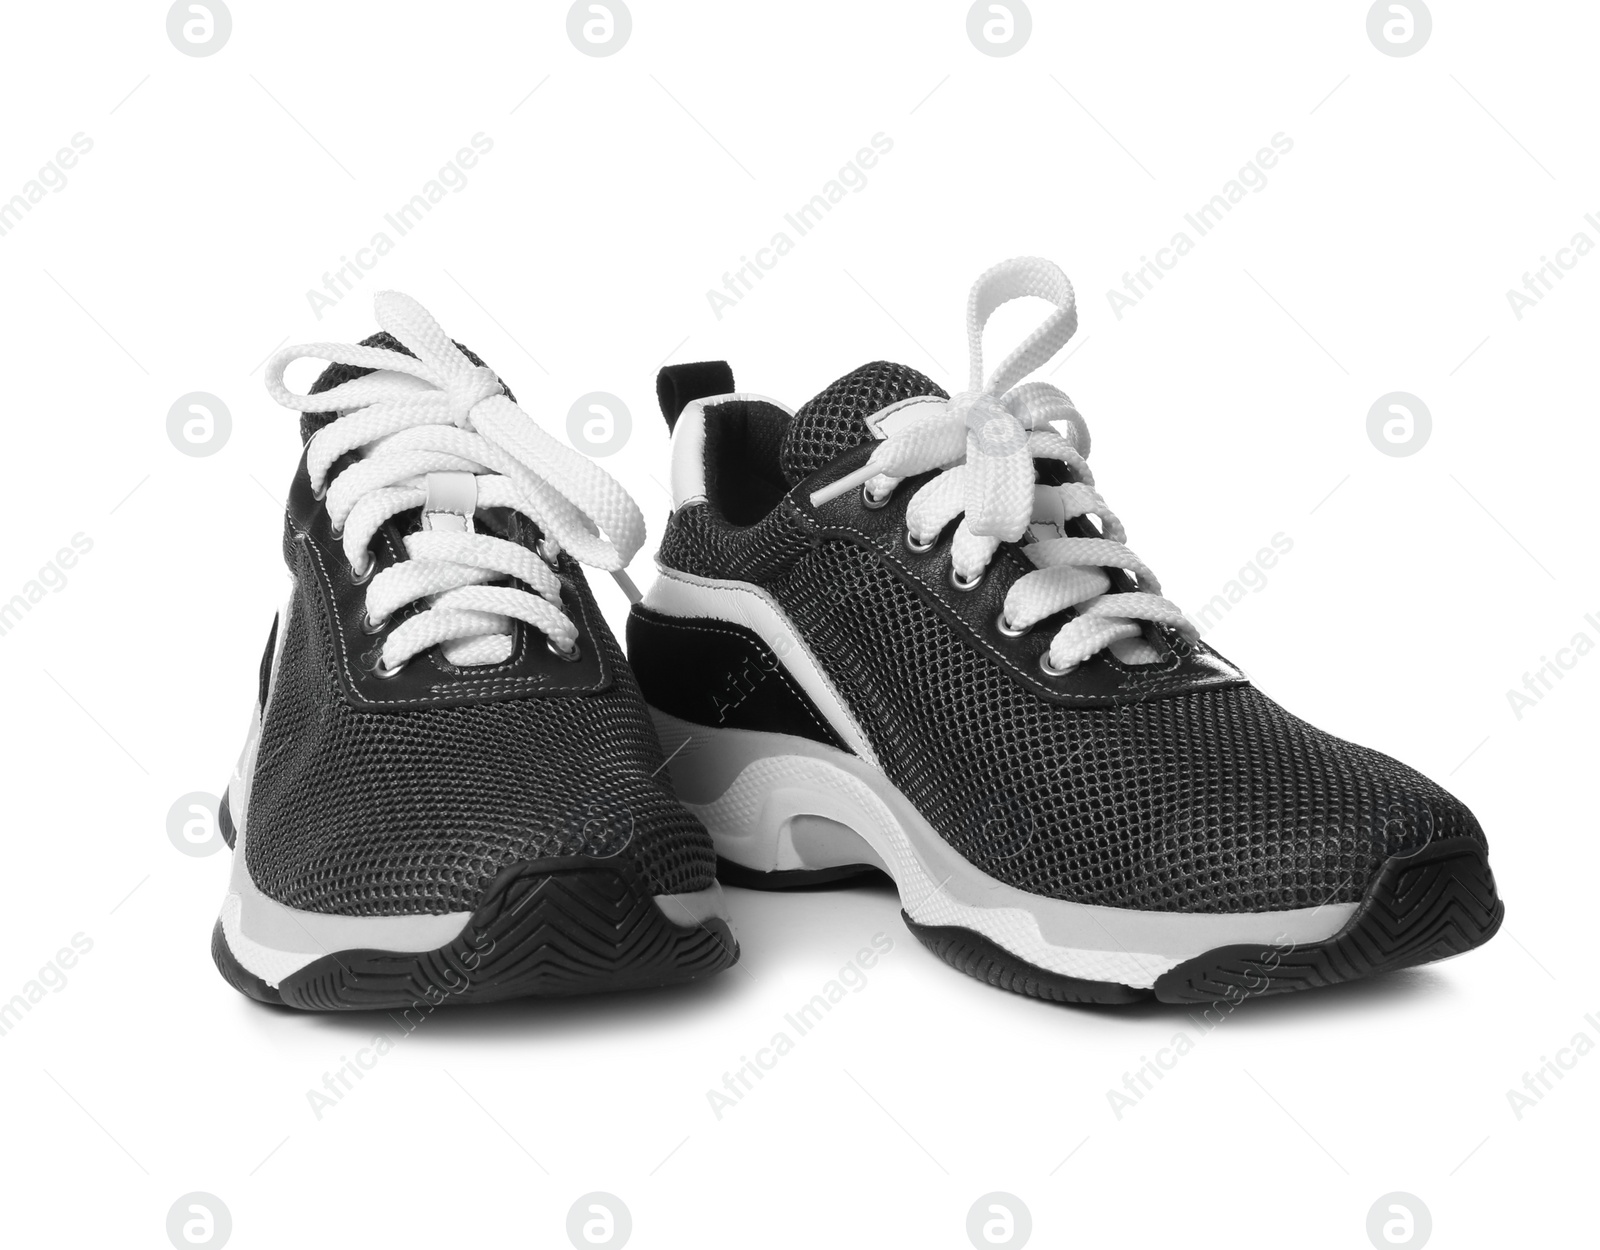 Photo of Pair of stylish modern training shoes on white background